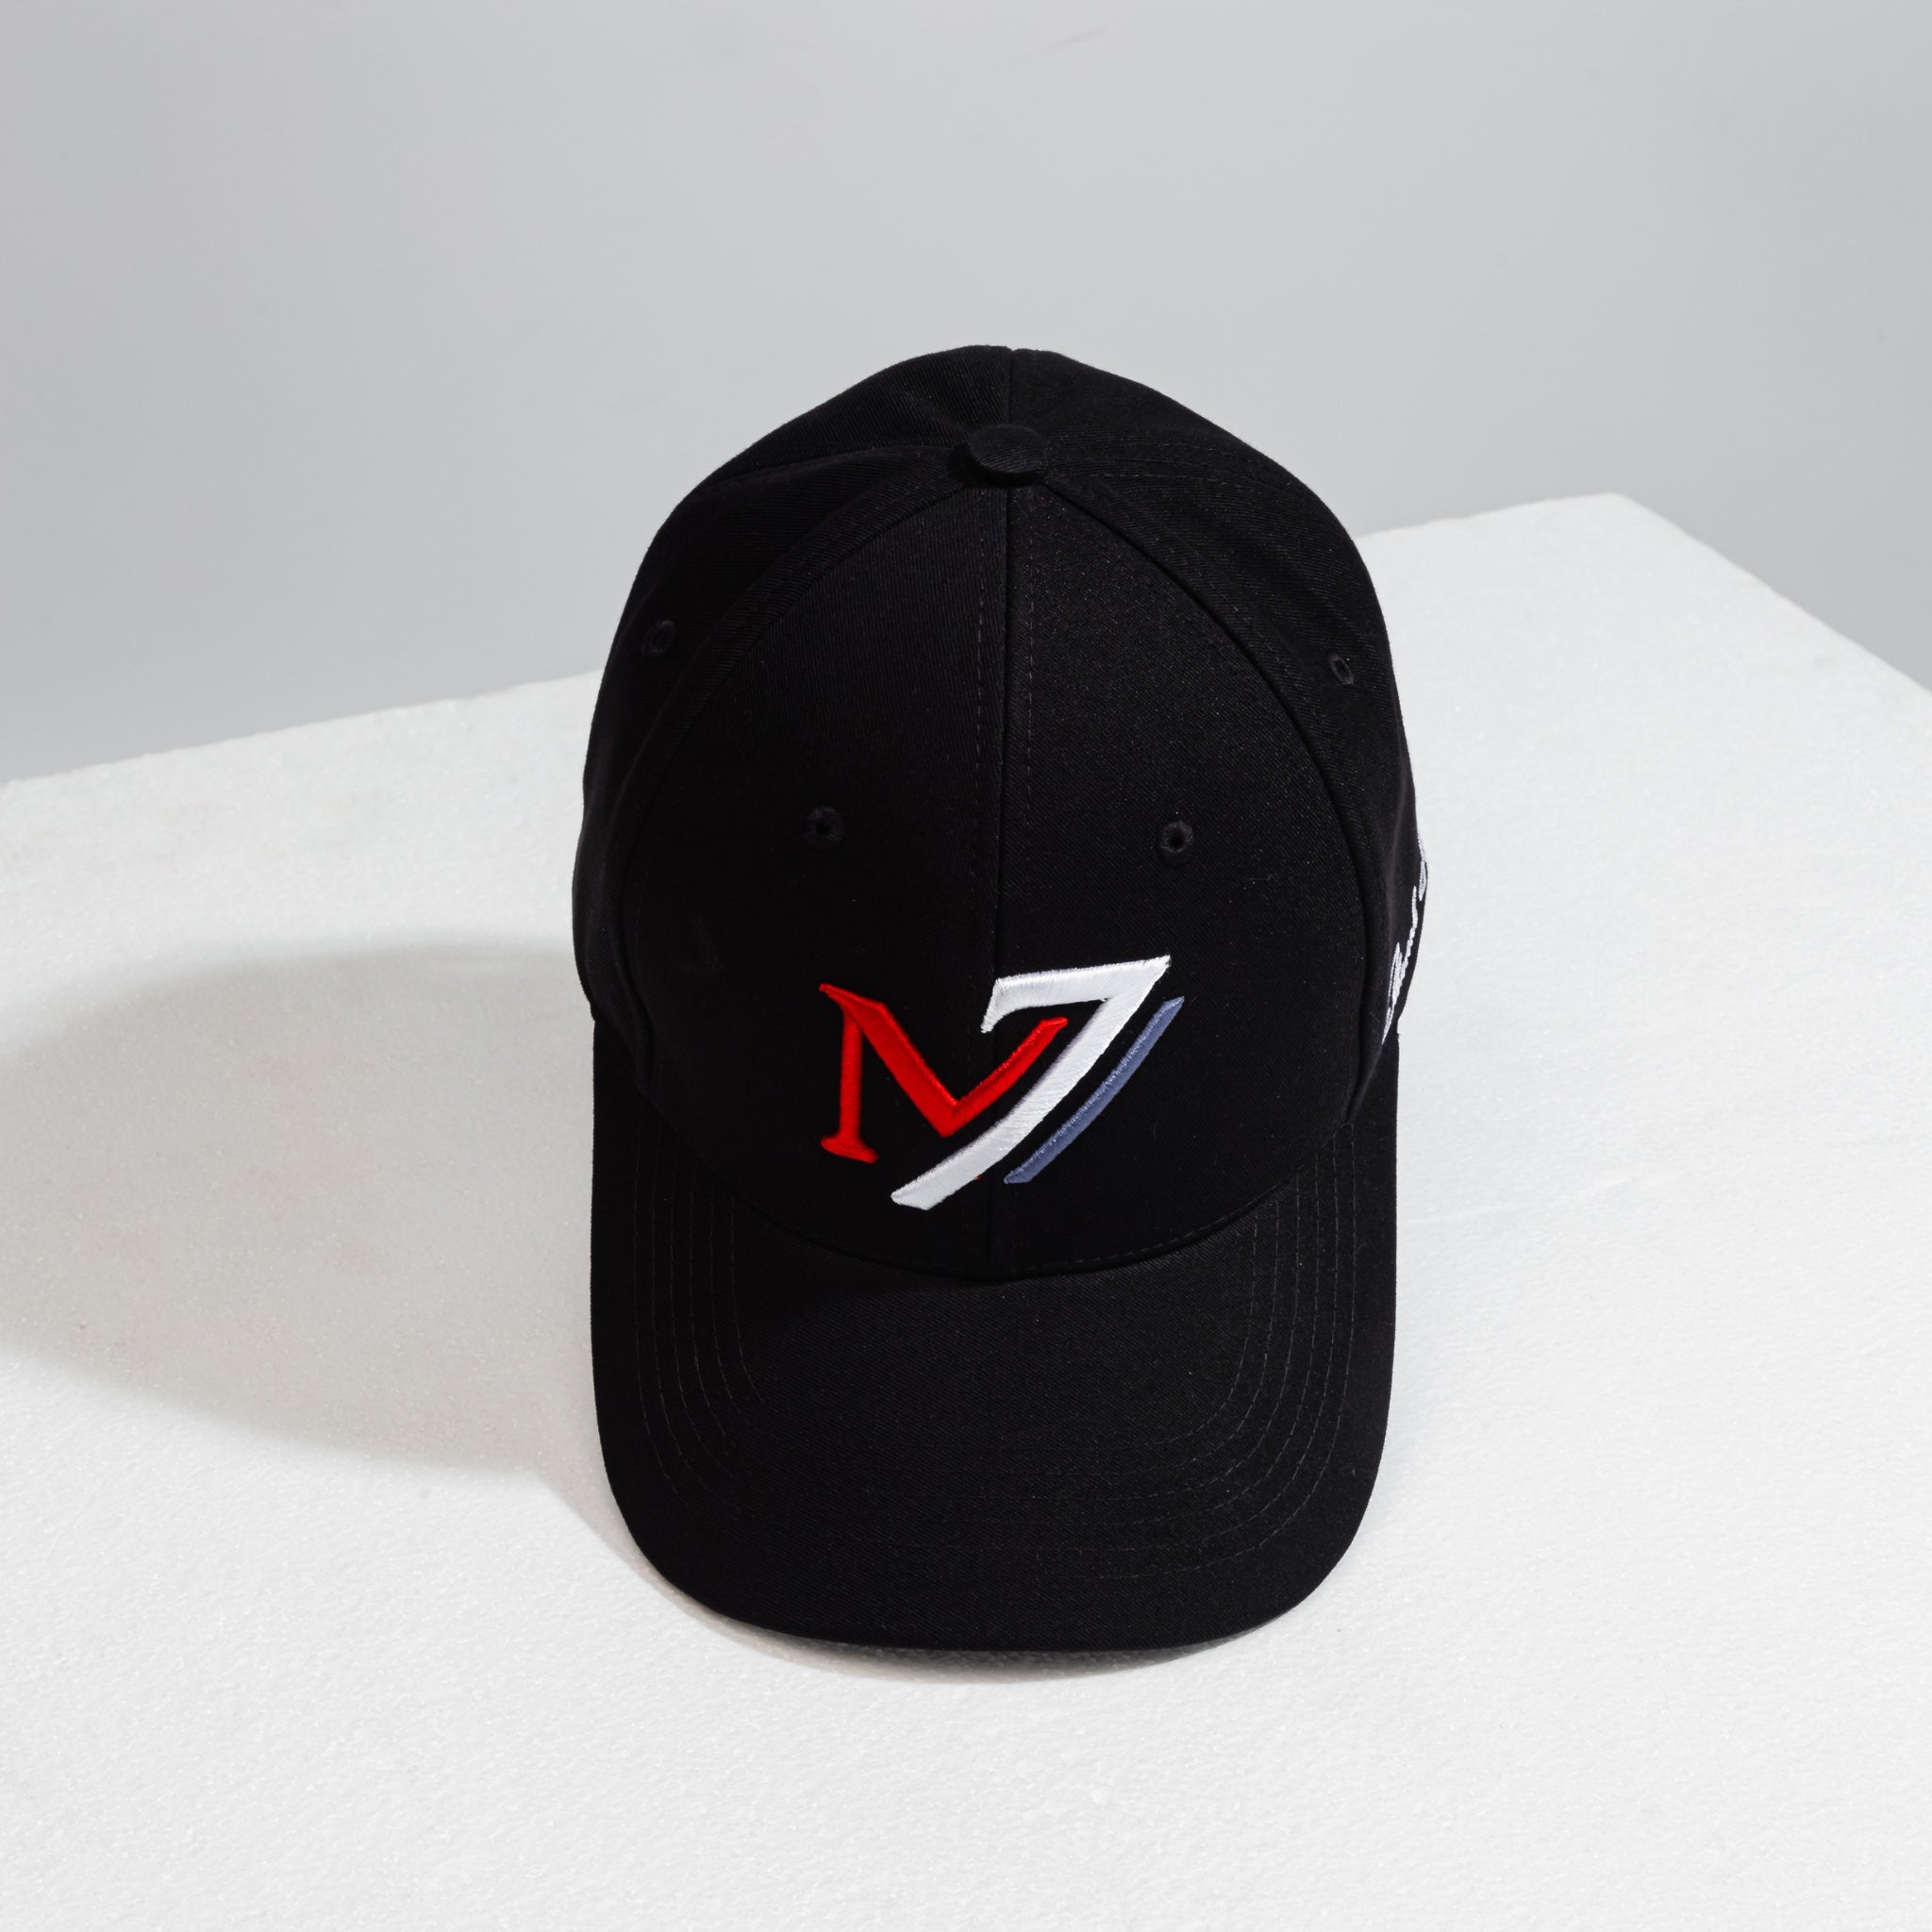 Black Trucker Cap | M7 Baseball Cap | Mystic Se7en